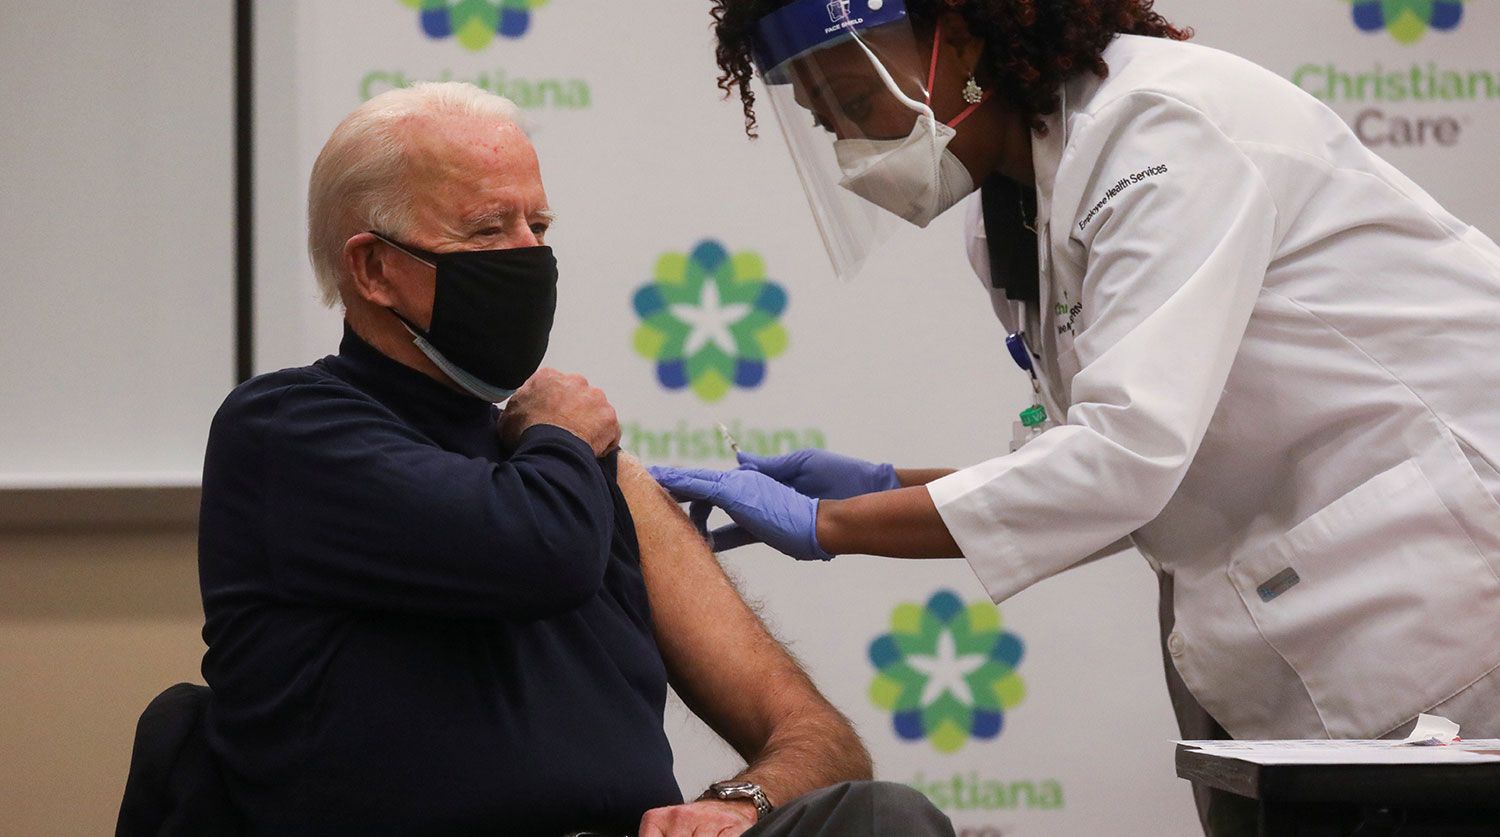 Європа «на голці»: 27 грудня в Євросоюзі стартує масова вакцинація від коронавірусу